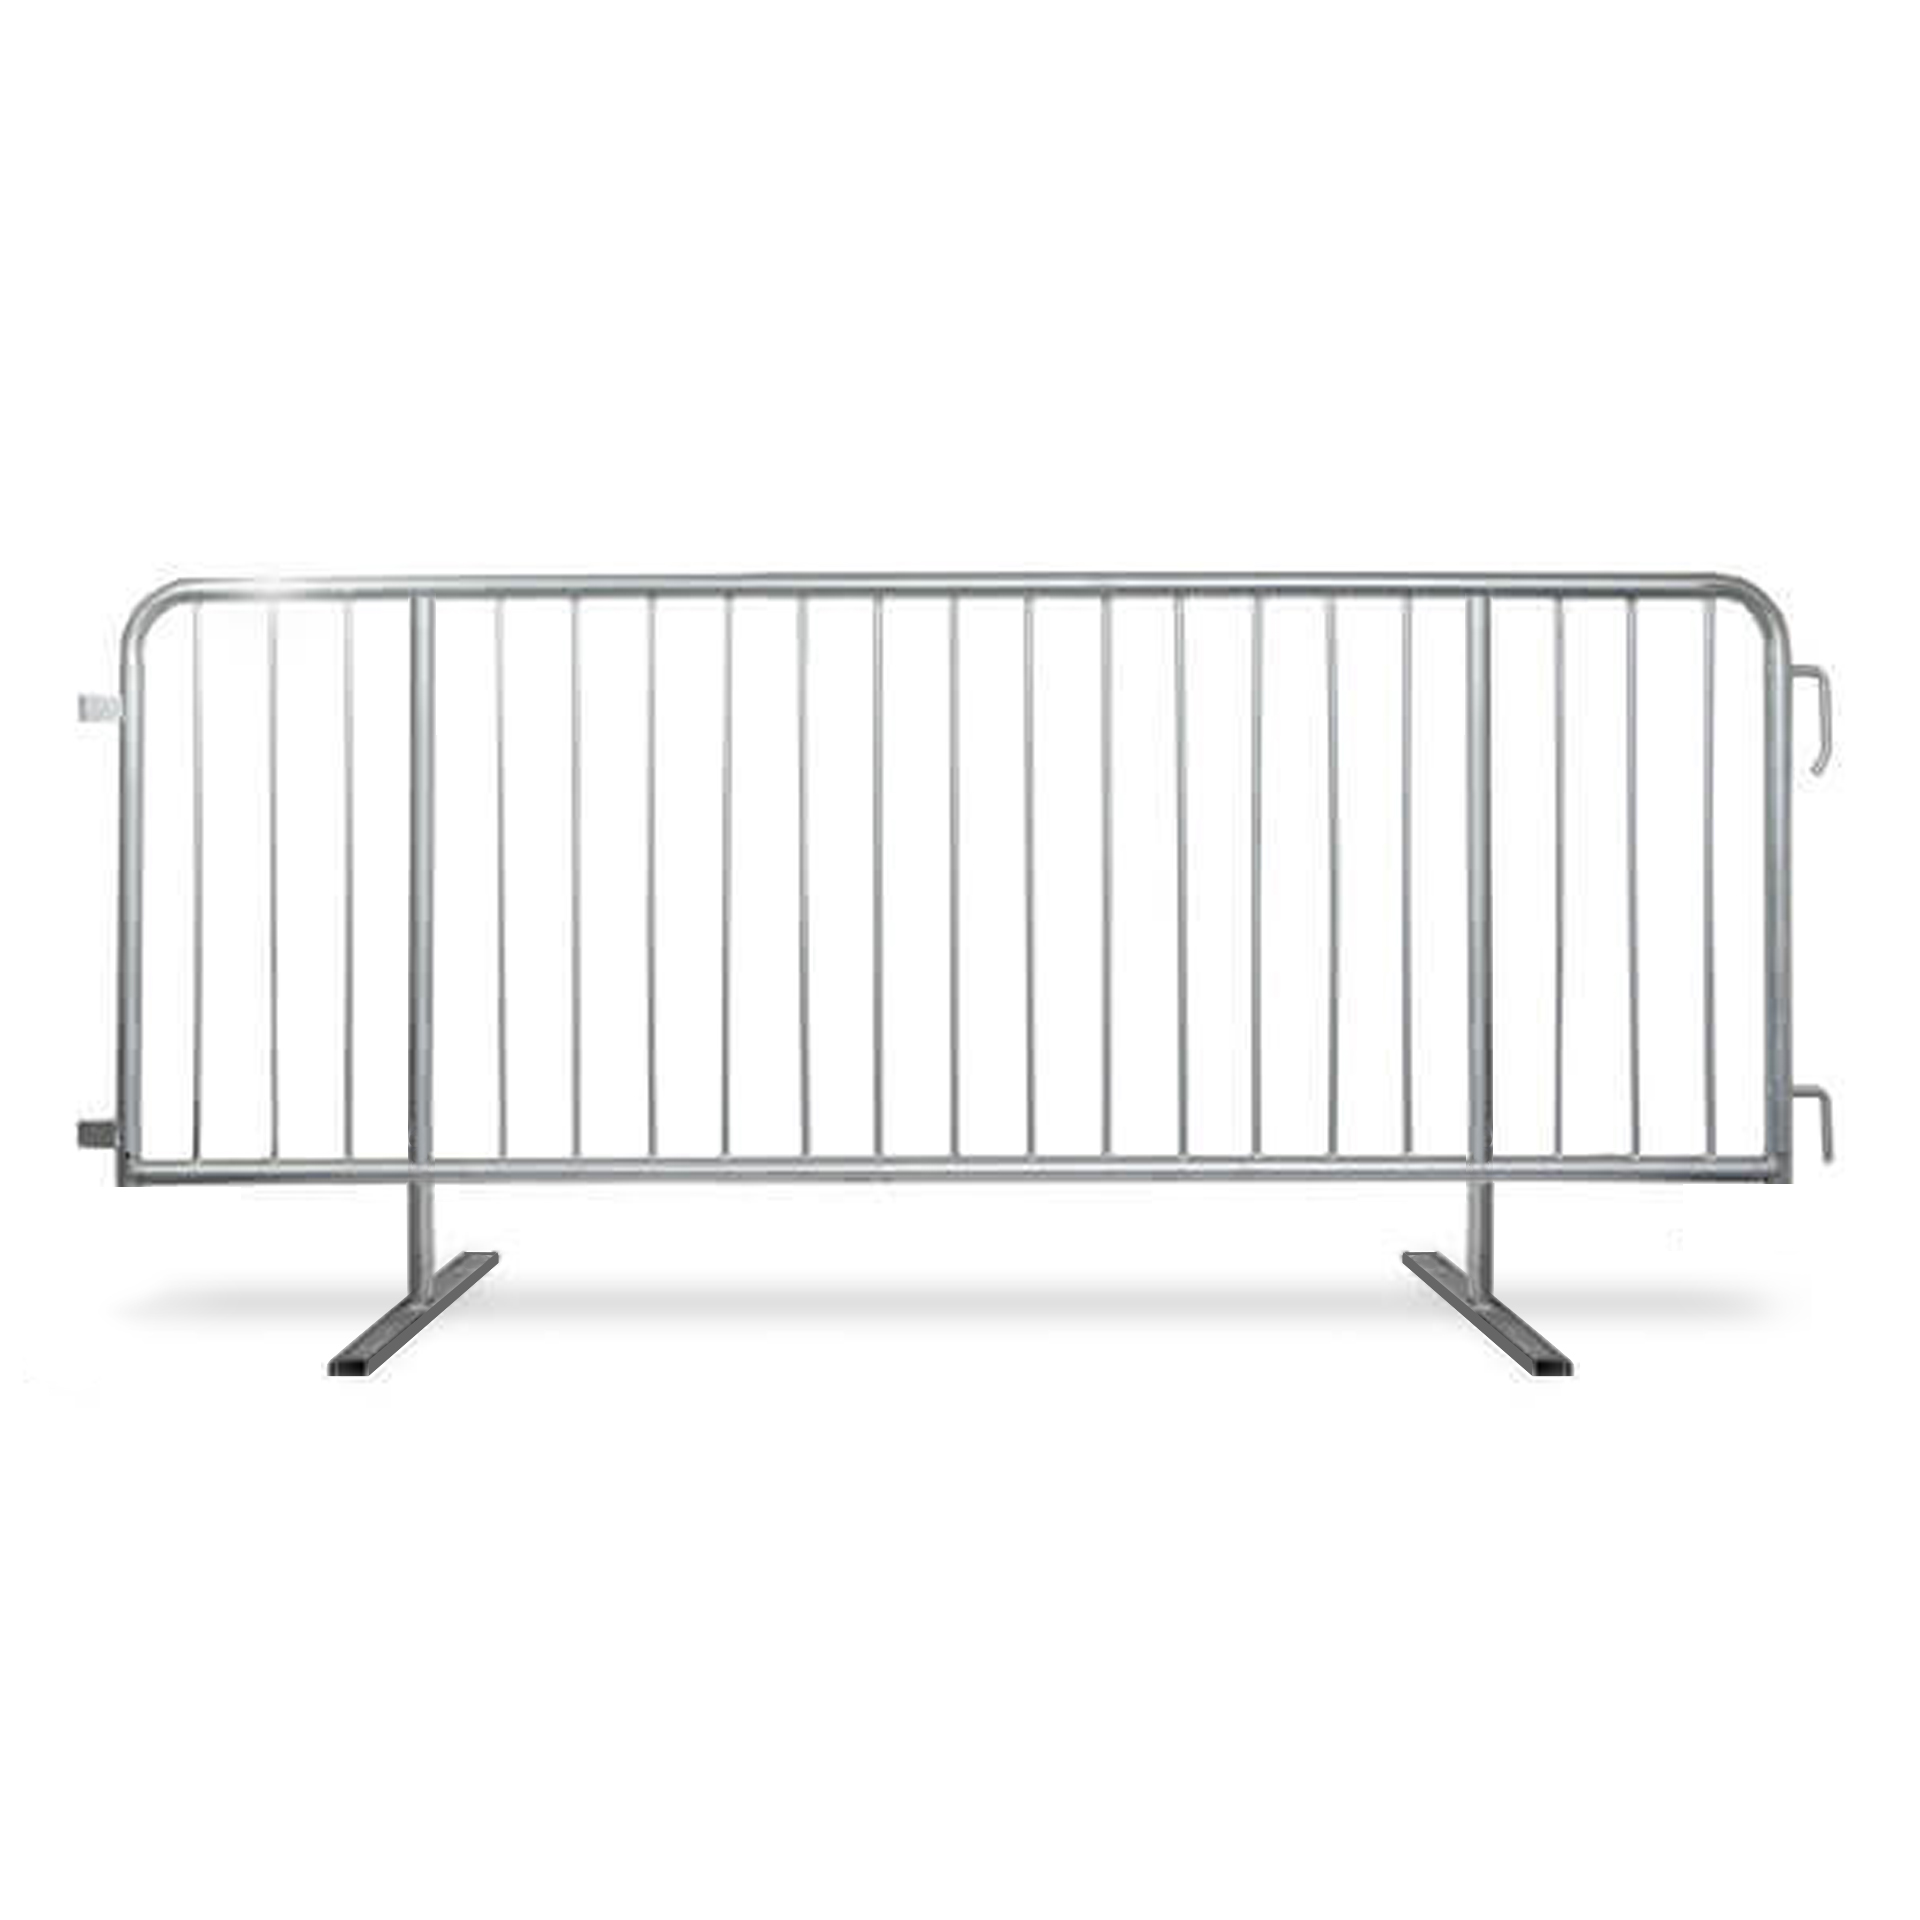 new-flat-heavy-duty-steel-barricade3